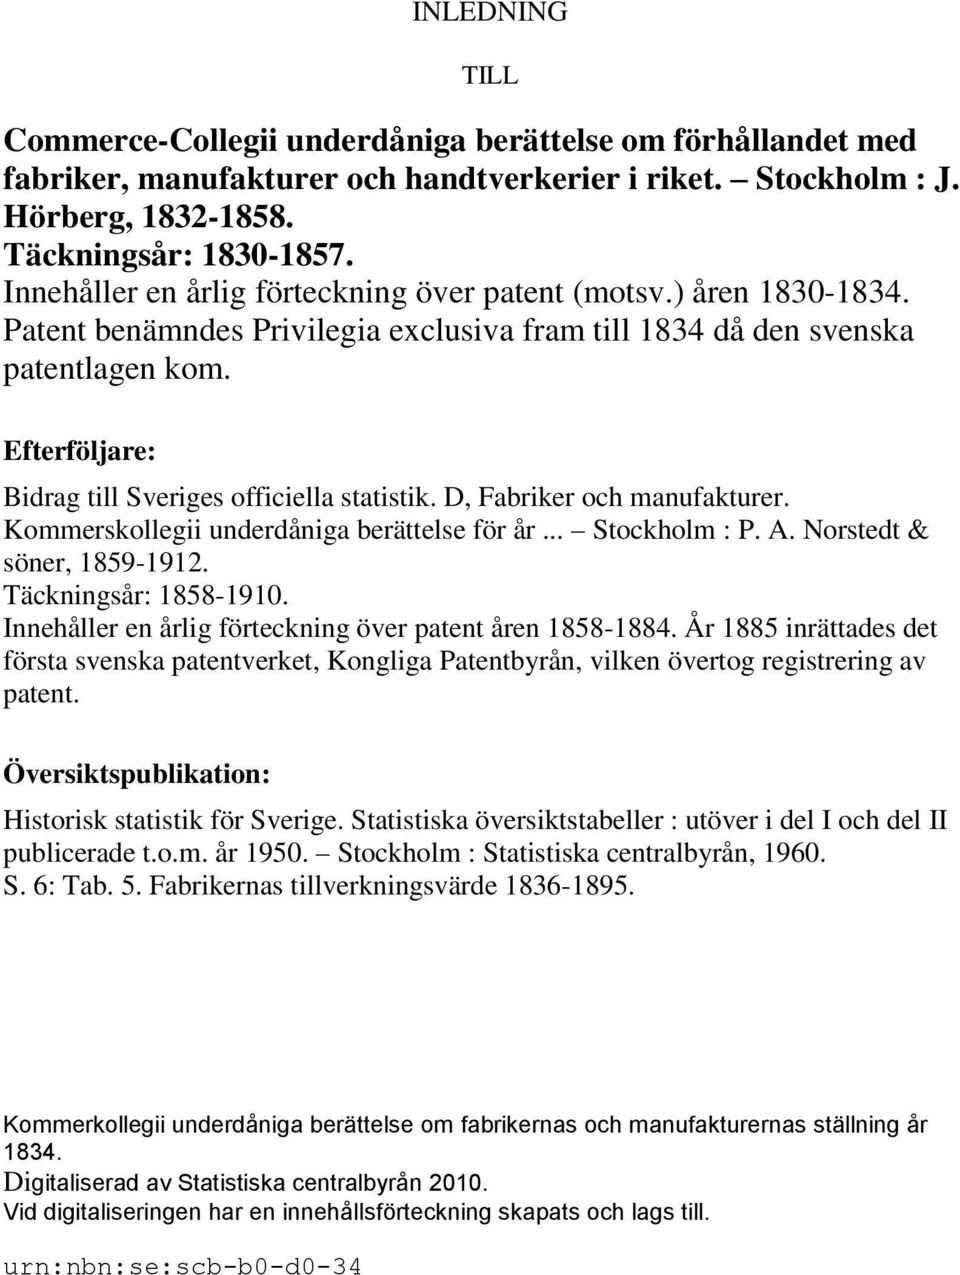 Efterföljare: Bidrag till Sveriges officiella statistik. D, Fabriker och manufakturer. Kommerskollegii underdåniga berättelse för år... Stockholm : P. A. Norstedt & söner, 1859-1912.